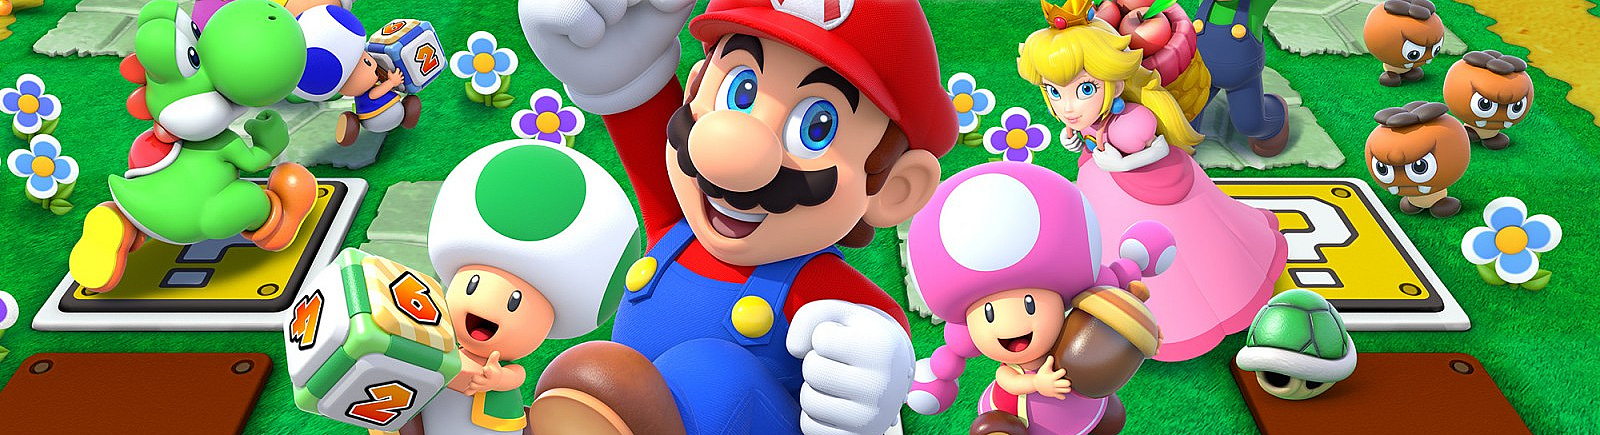 Дата выхода Mario Party: Star Rush  на Nintendo 3DS в России и во всем мире